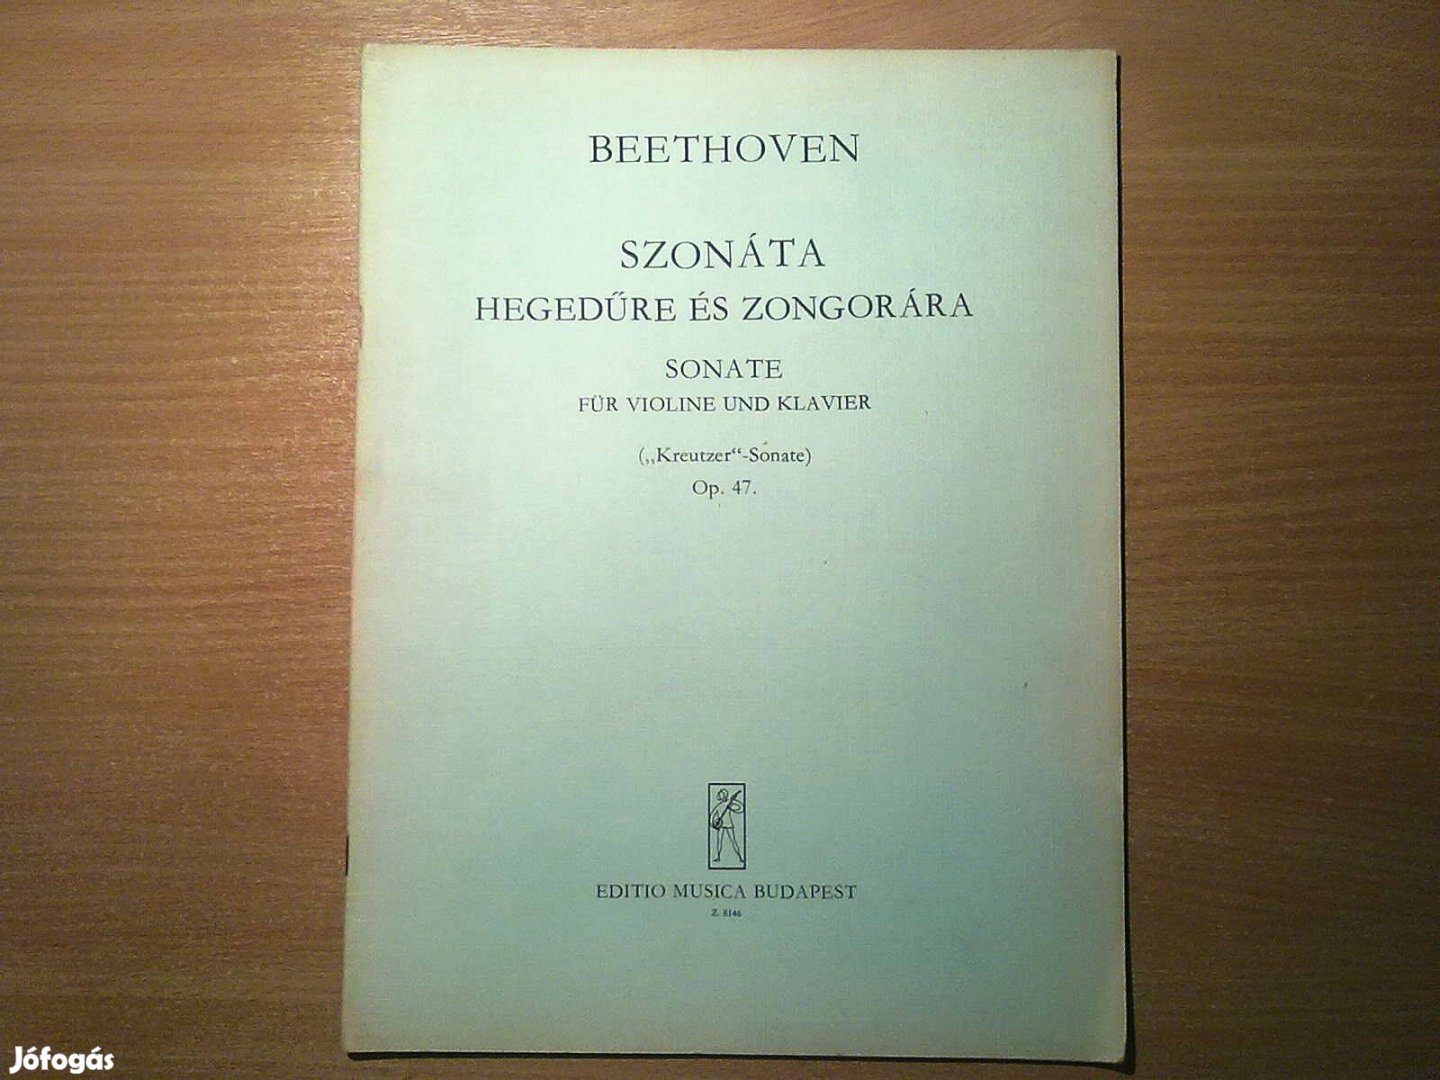 Beethoven - Szonáta hegedűre és zongorára (alig használt)